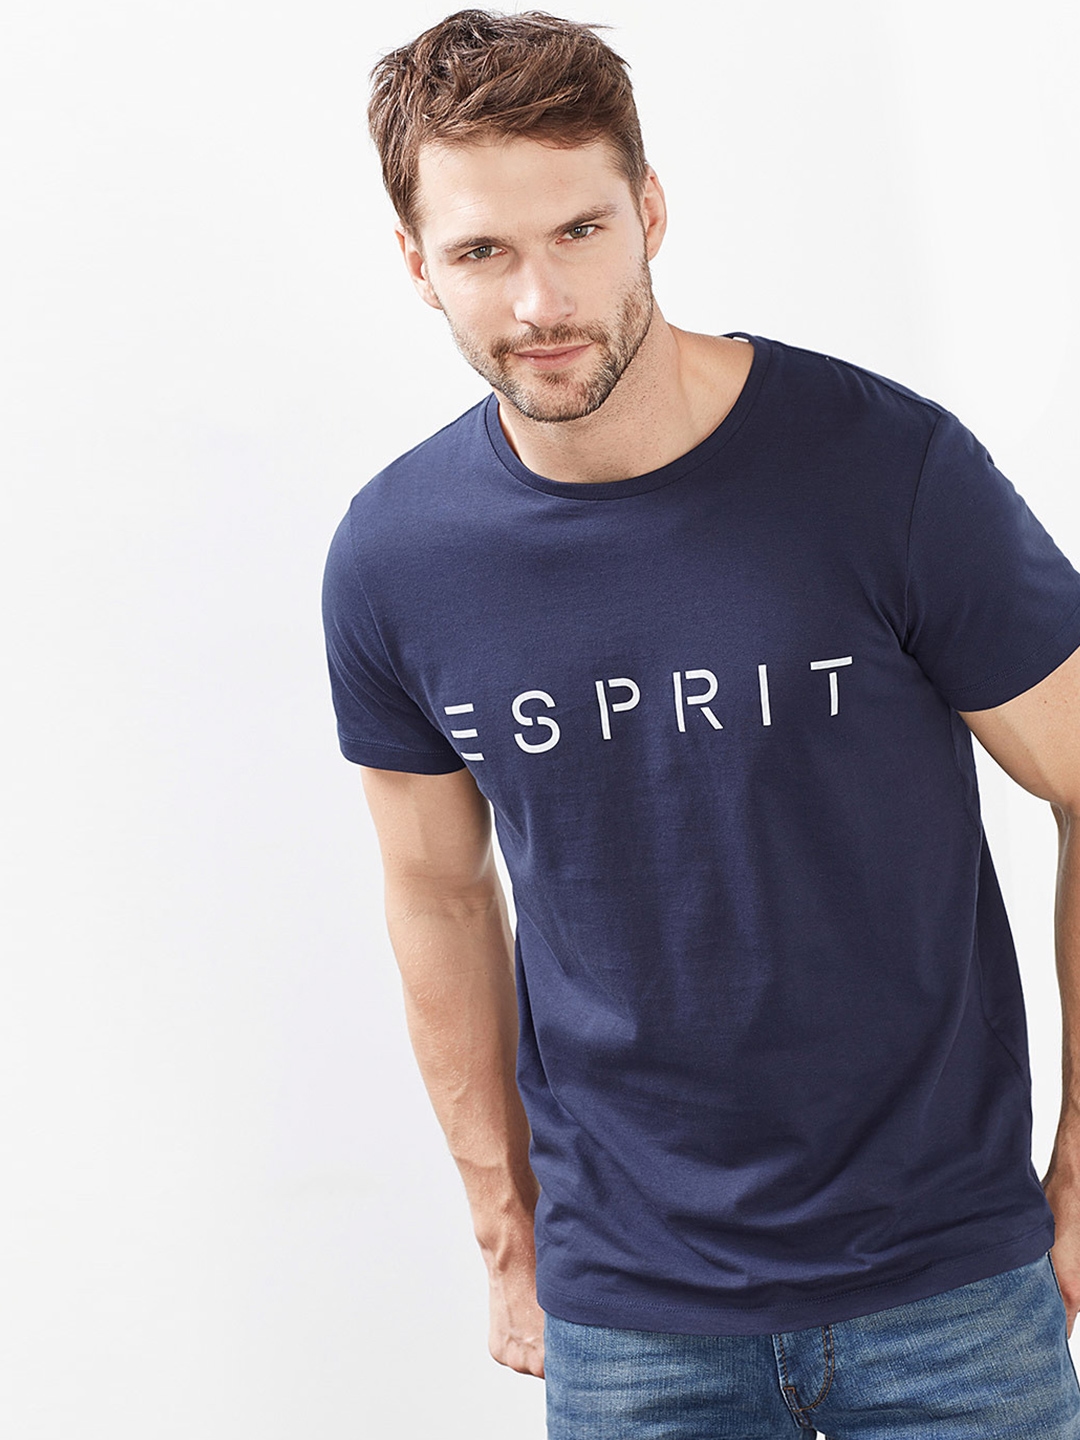 Buy > t shirt esprit > in stock